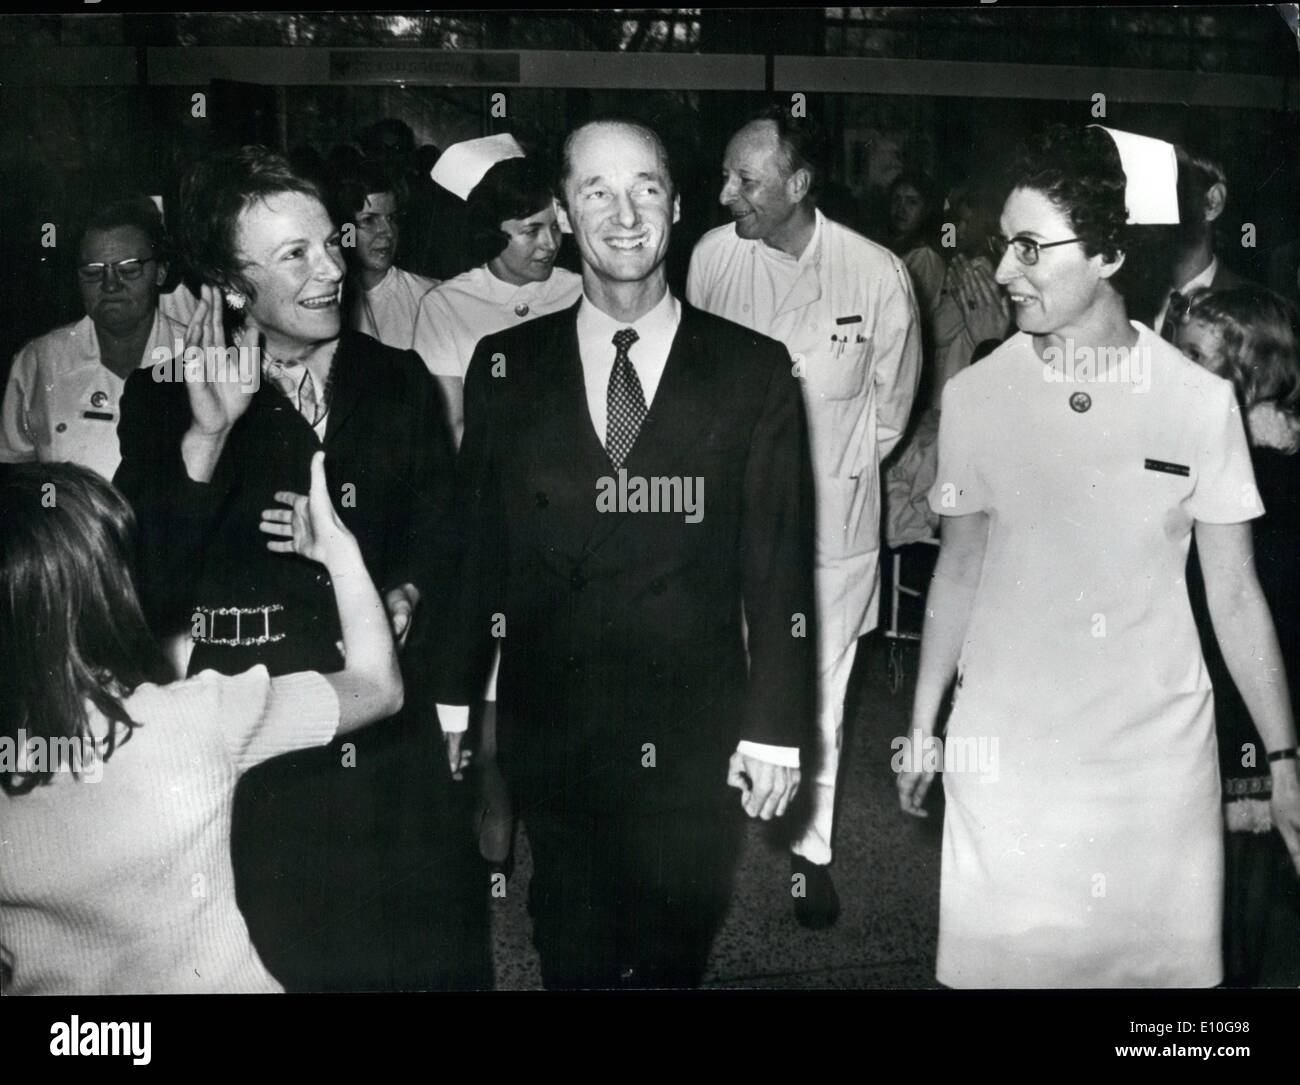 10 octobre 1972 - des jumeaux pour la princesse Irène : la princesse Irène des Pays-Bas, et son mari, le Prince Carlos Hugo de Bourbon-parme, illustré de quitter l'hôpital à Nimègue, où la Princesse a donné naissance à des jumeaux le 13 octobre. Banque D'Images